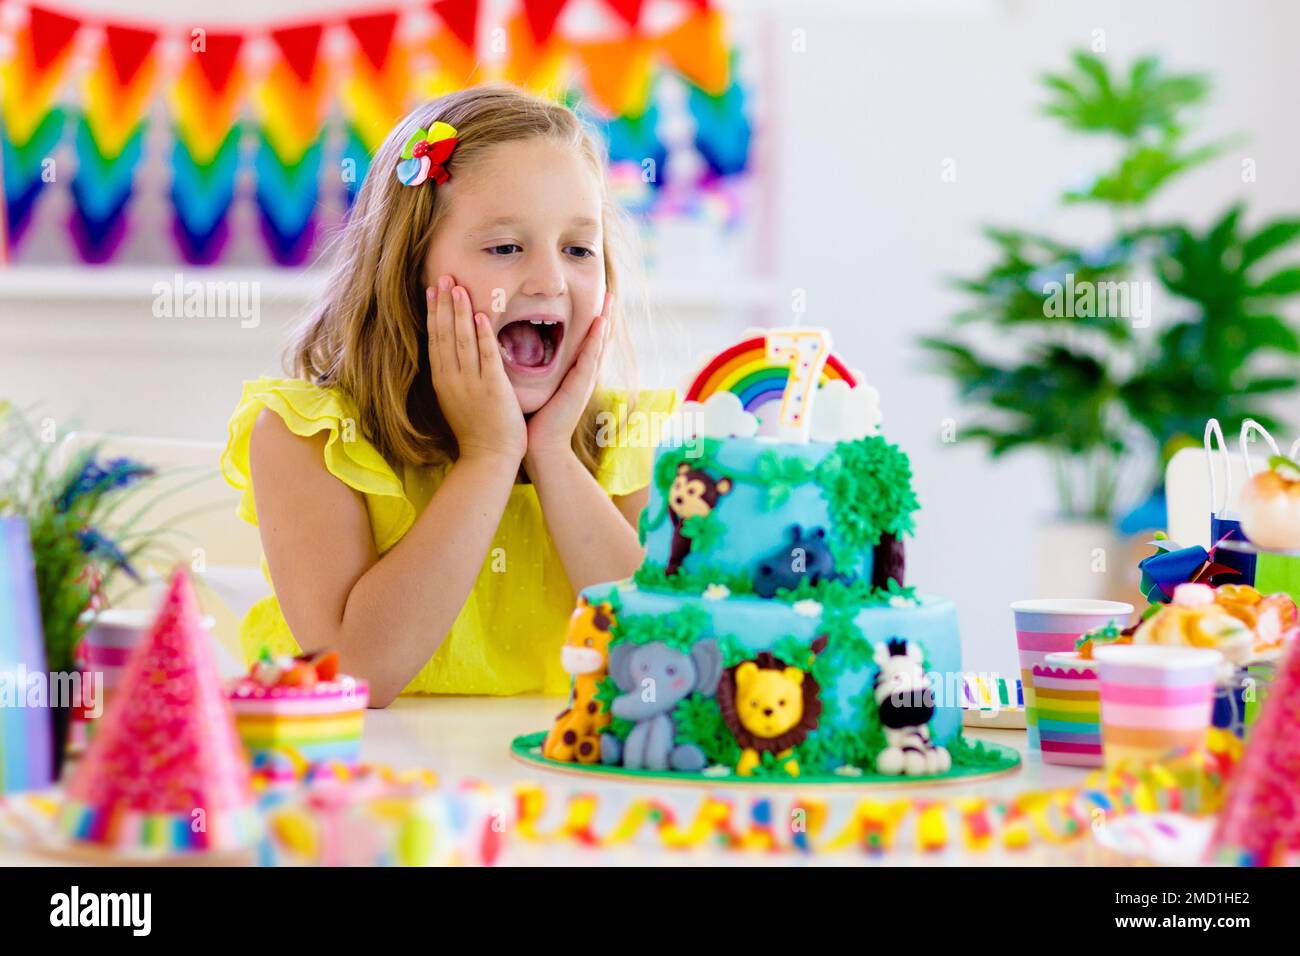 Curiosidad: El origen de las velas del pastel de cumpleaños - Ideas para  Fiestas de cumpleaños - Infantiles o Adultos